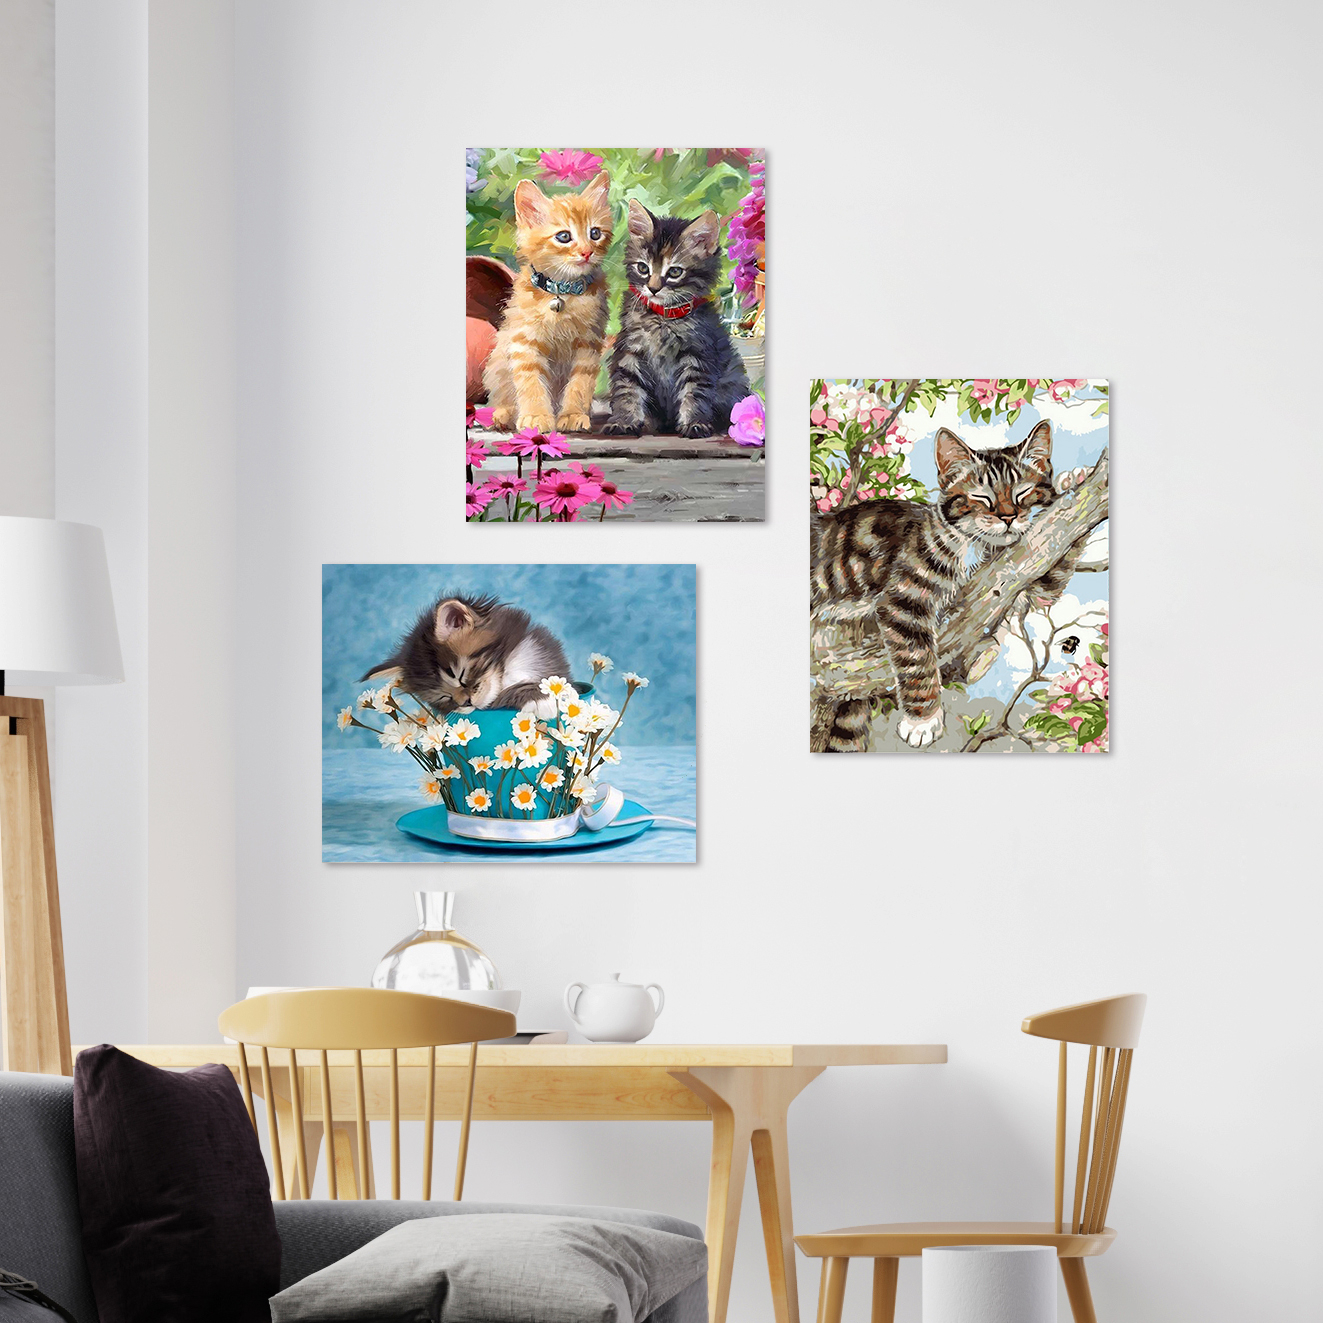 新款DIY數字油畫 藝術 彩繪油畫 DIY彩繪 油畫 彩繪 淡彩著色 貓咪油畫 貓咪掛畫 壁畫 牆壁裝飾 有框畫 窩自在